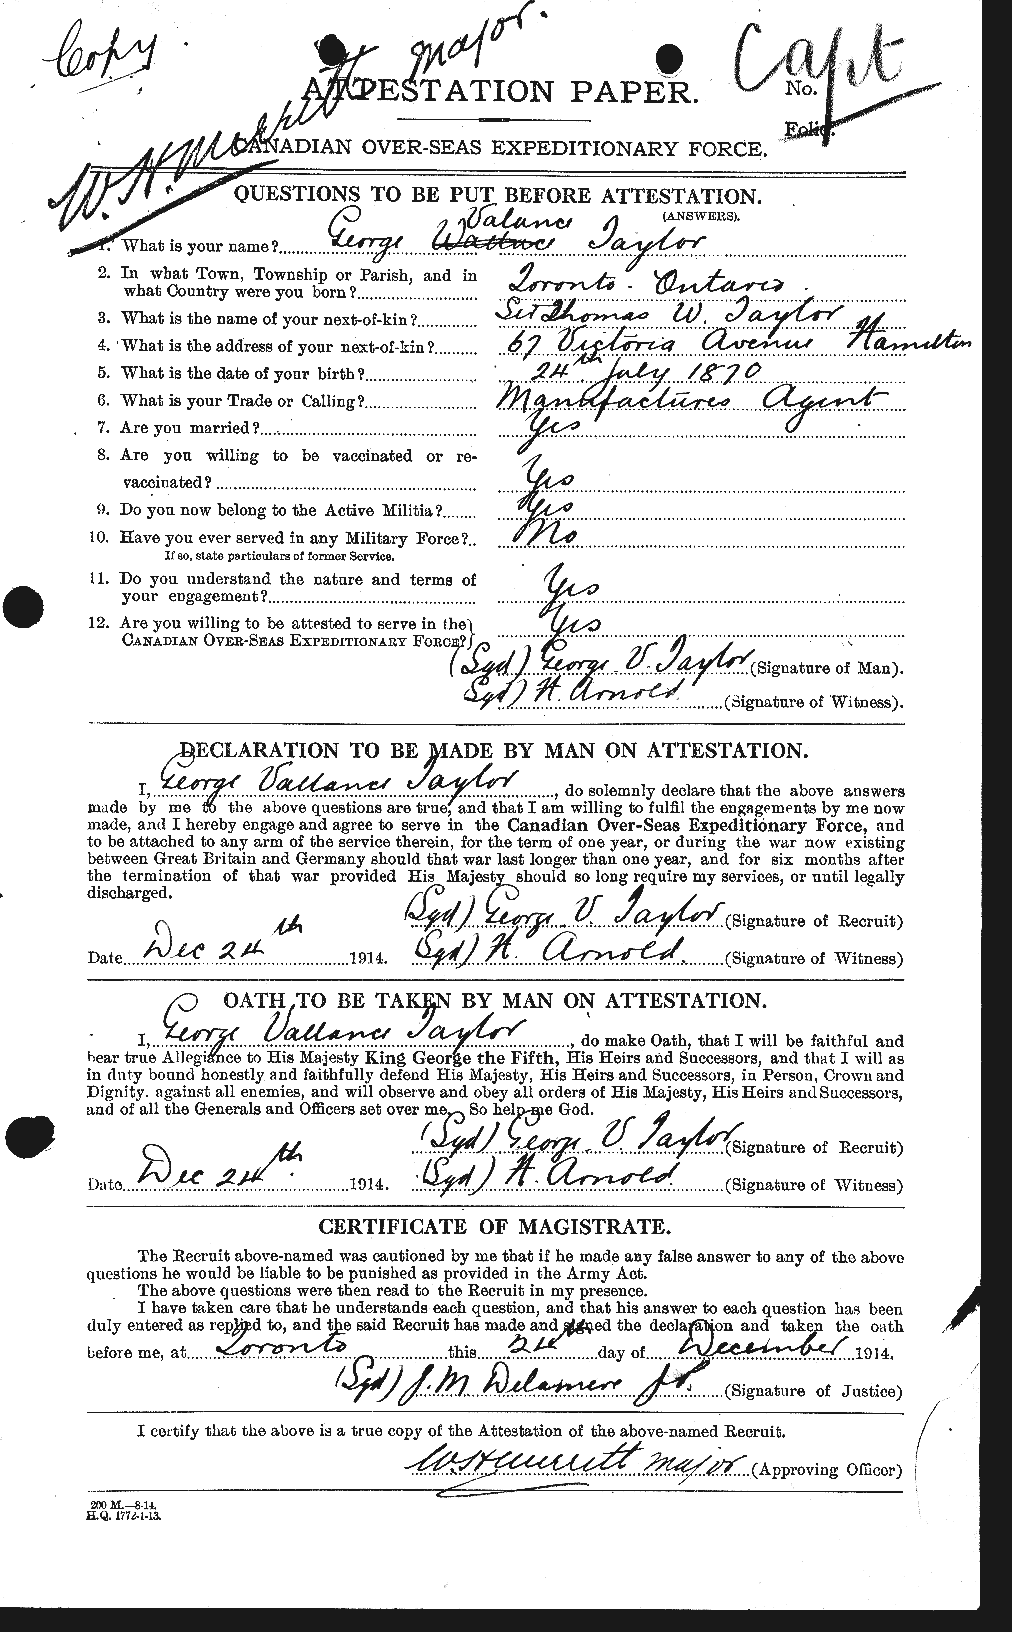 Dossiers du Personnel de la Première Guerre mondiale - CEC 626357a